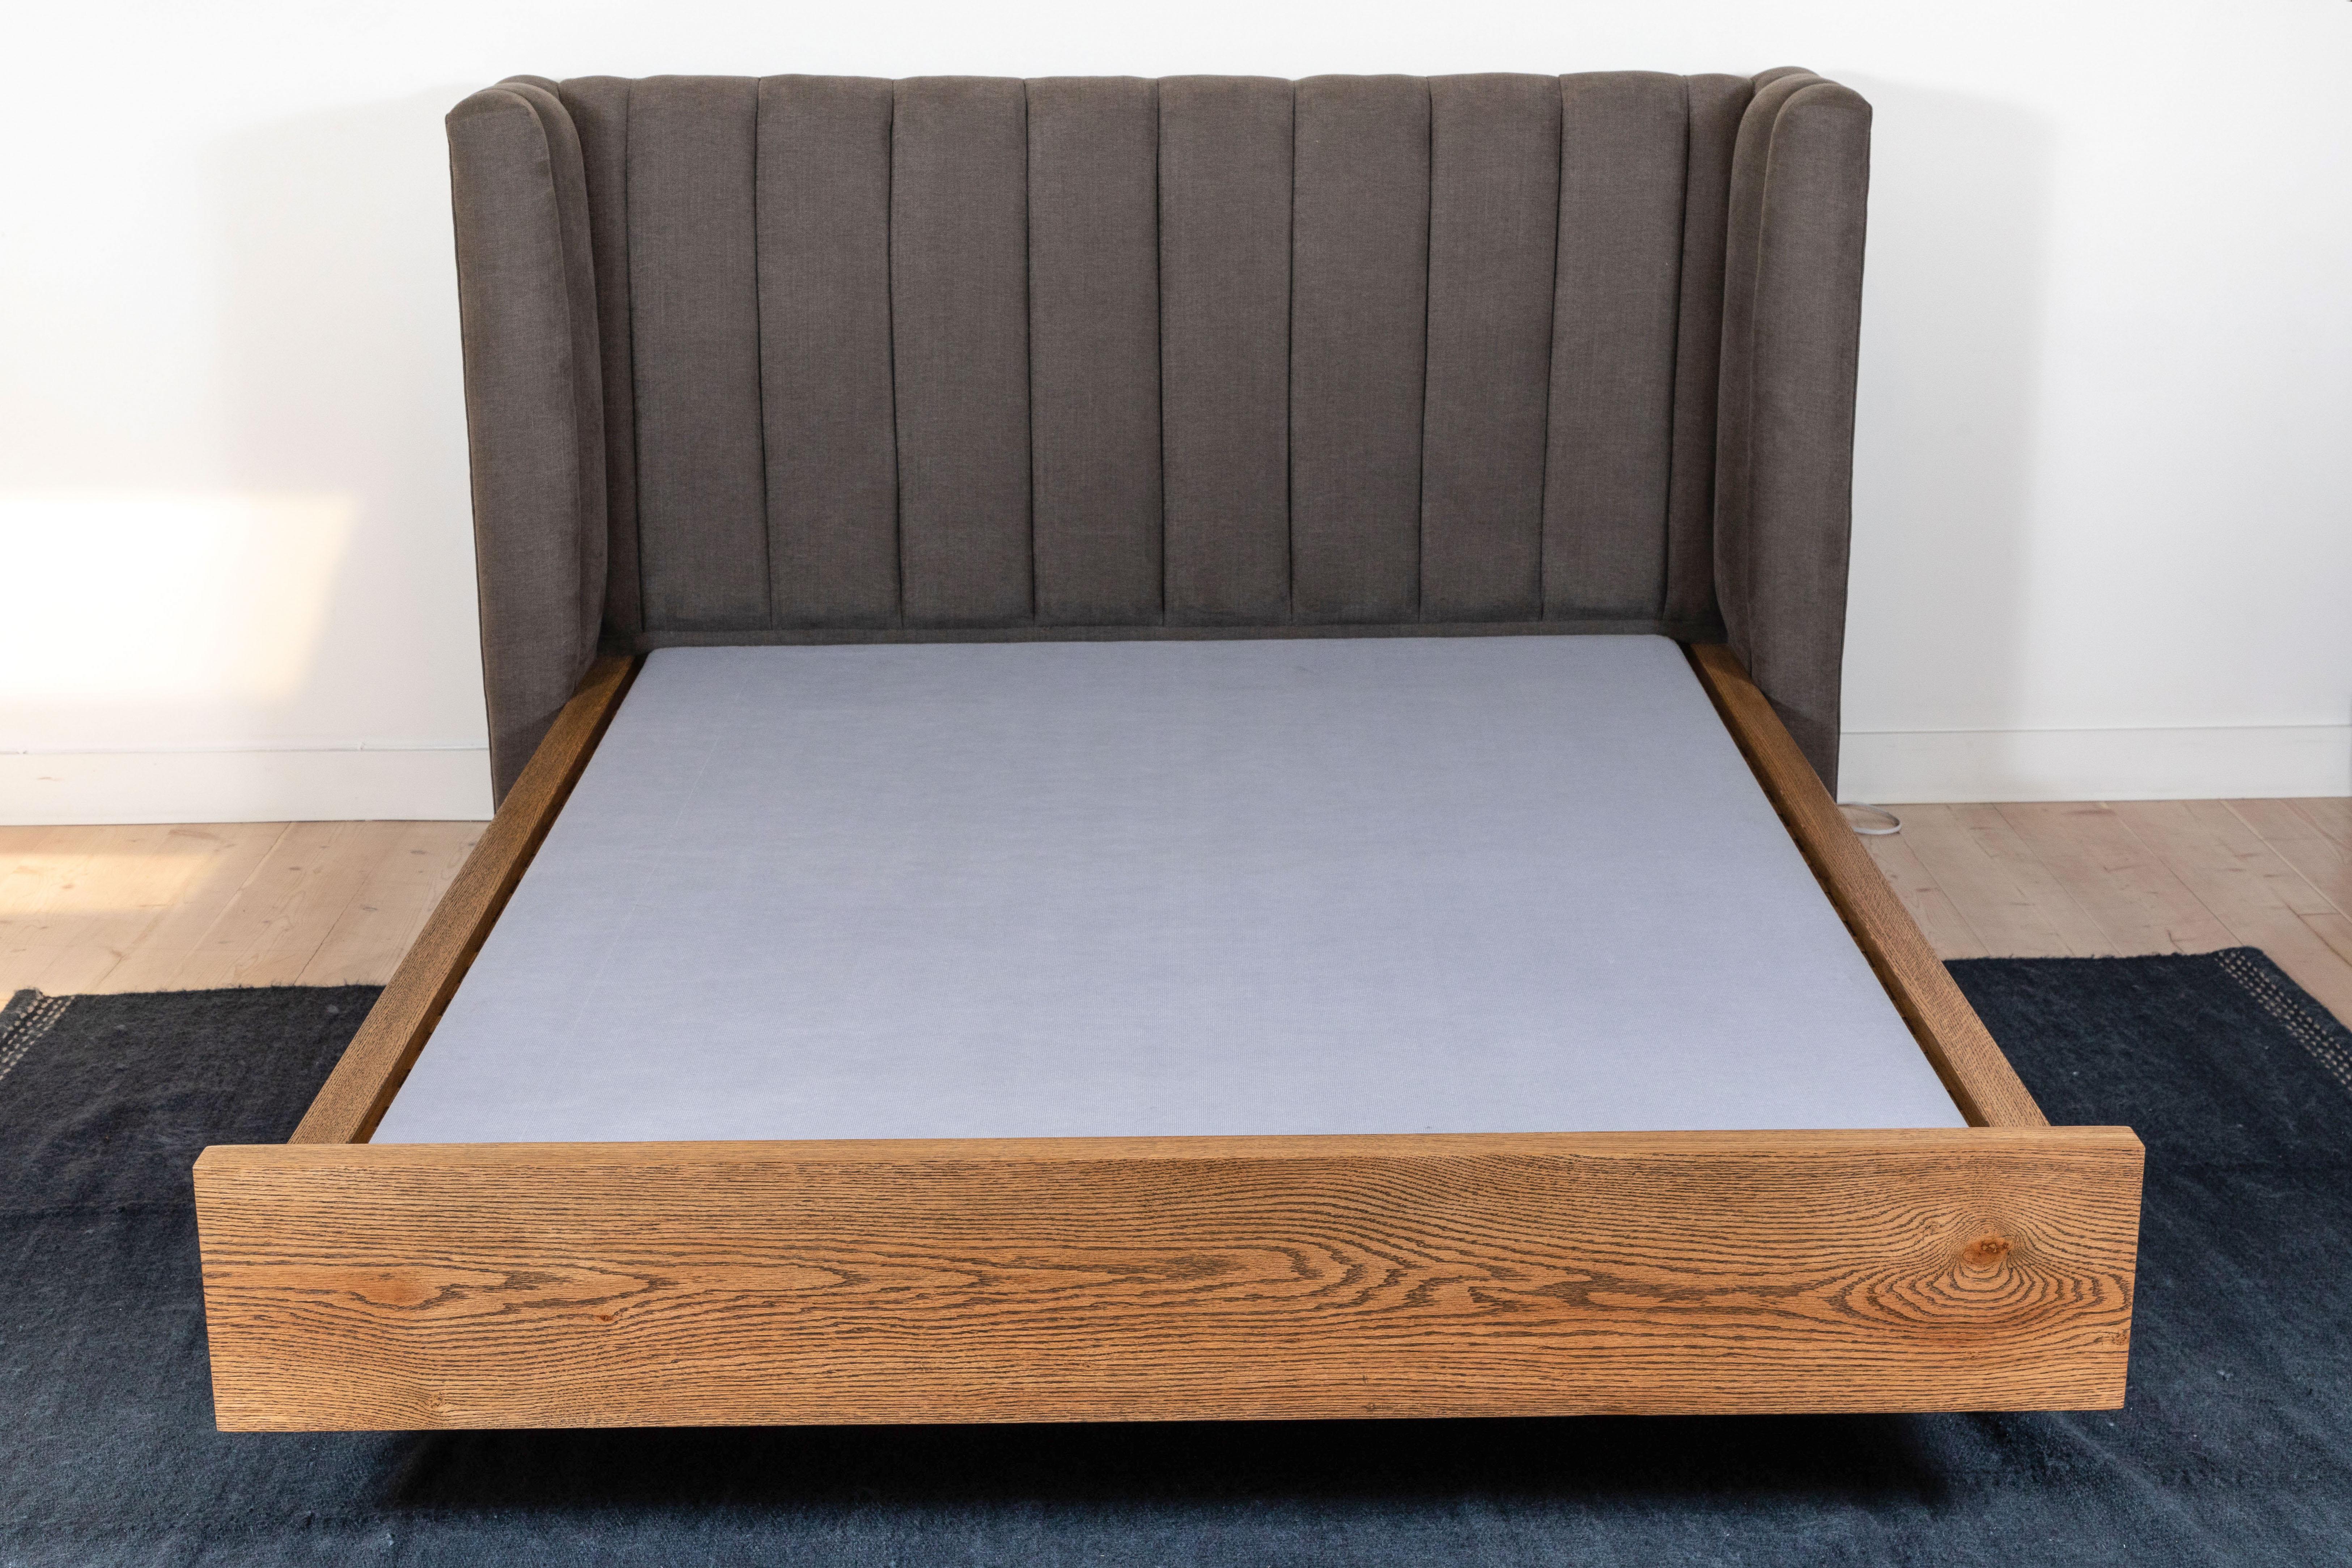 North American Isherwood Bed by Lawson-Fenning